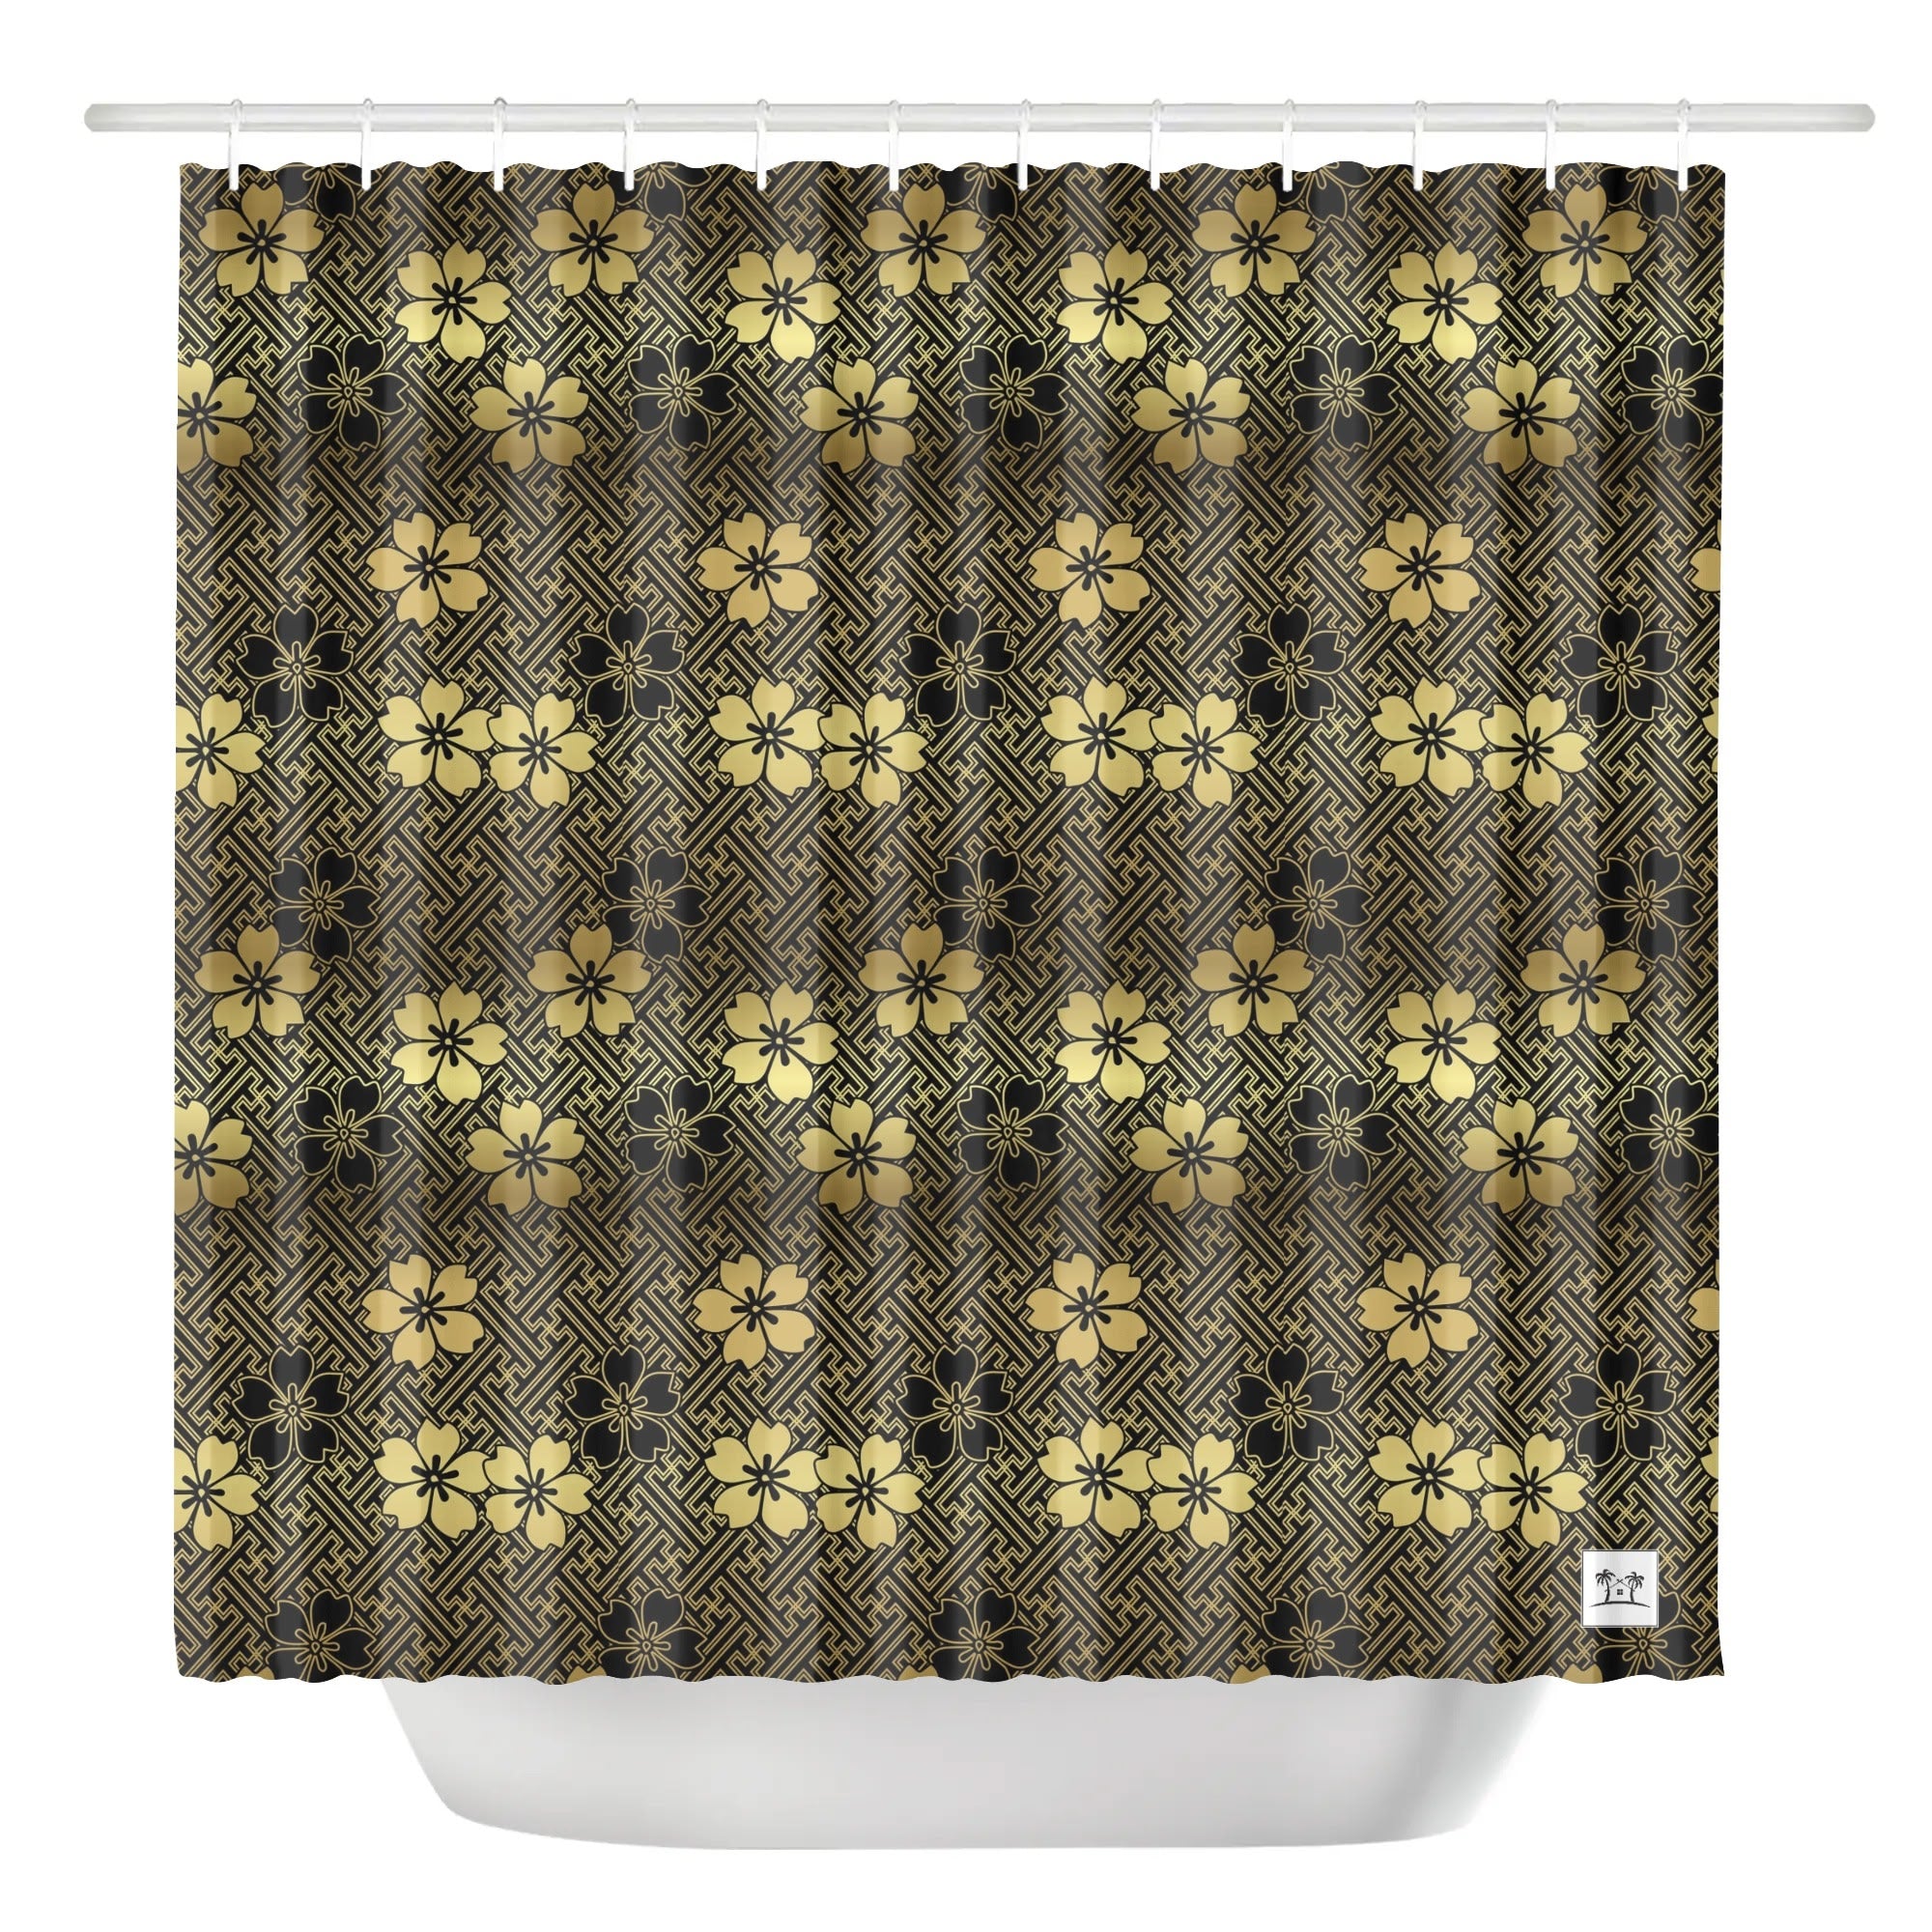 Waterproof Shower Curtain - Sakura on Lattice